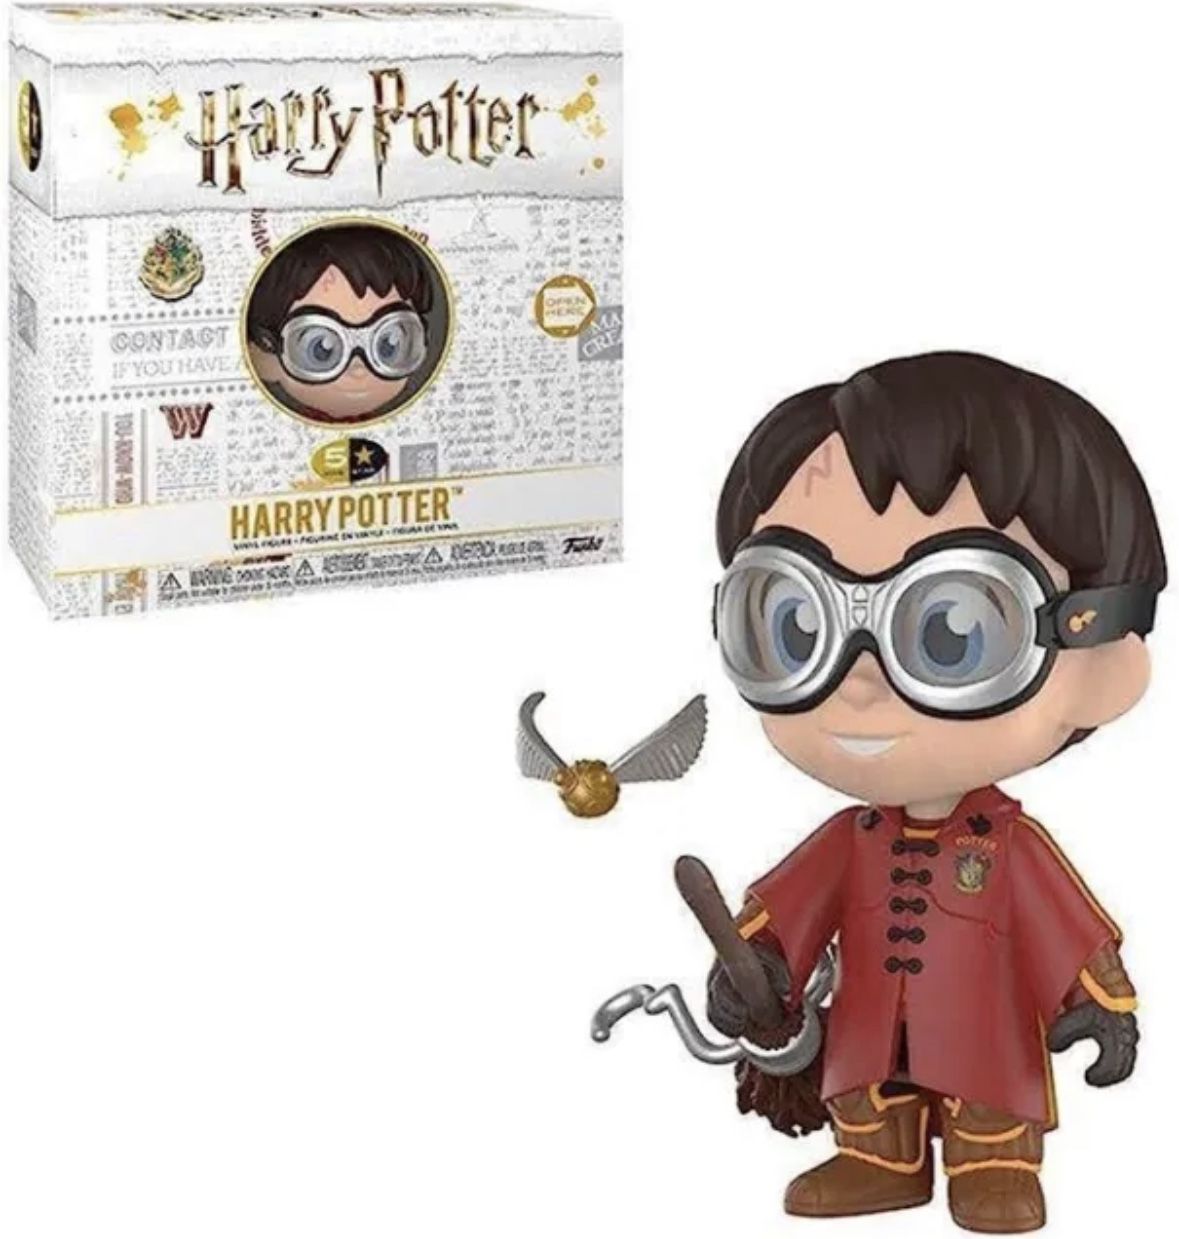 NEW - Funko Five Star Harry Potter - HP Quidditch Vinyl Figure GAME STOP EXCLUS.